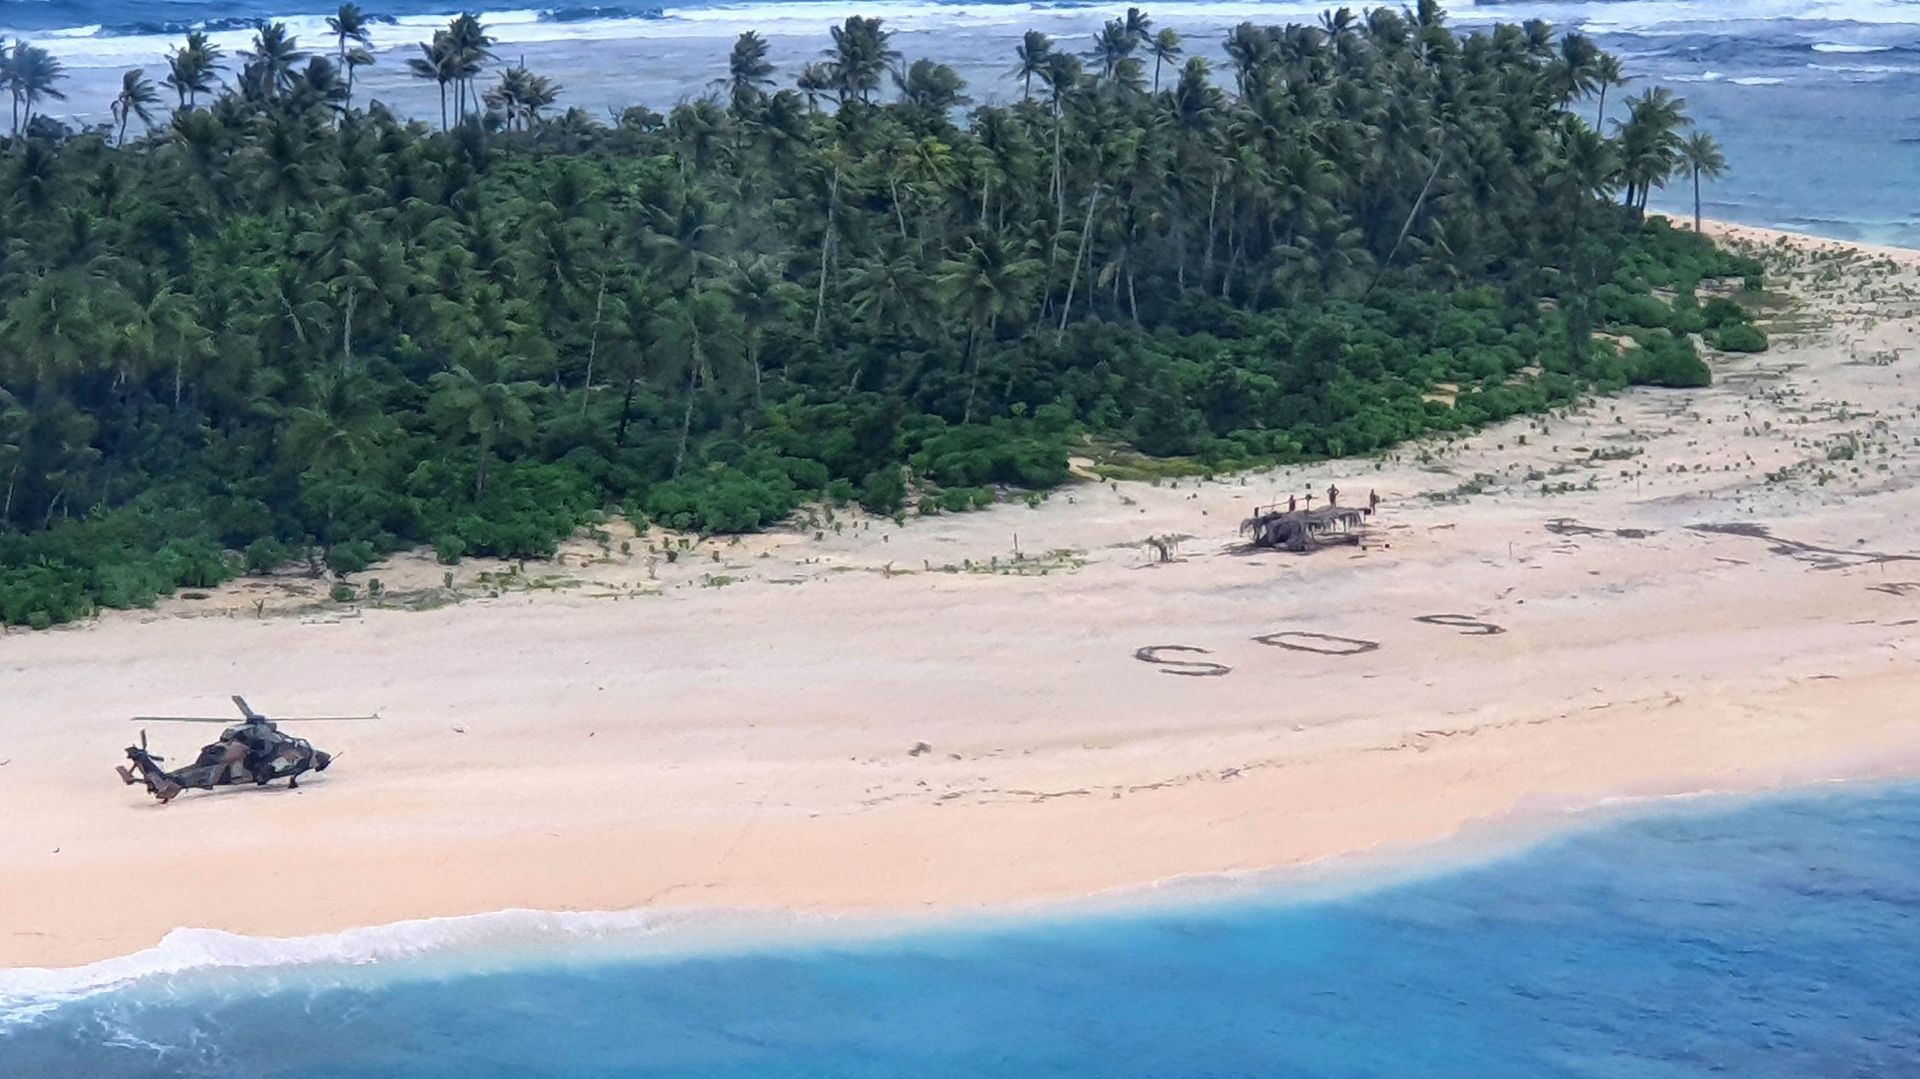 Des avions australien et américain ont repéré le "SOS" géant qu'ils avaient dessiné sur la plage.